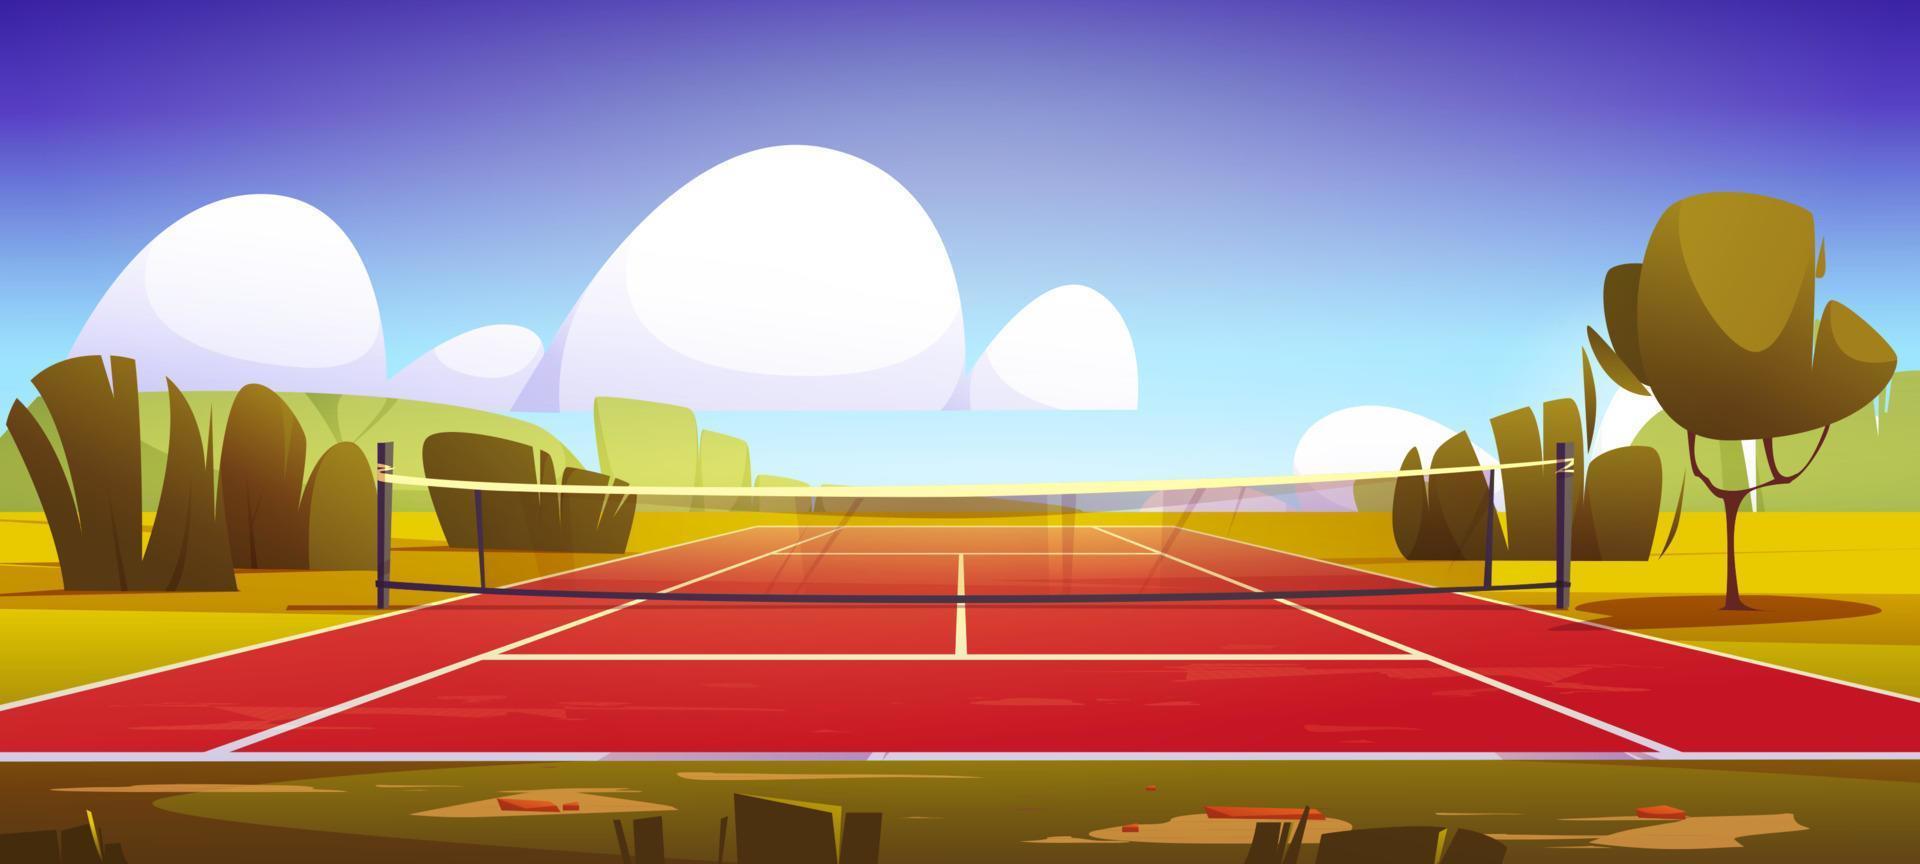 tennis domstol, sport fält med netto på grön gräsmatta vektor